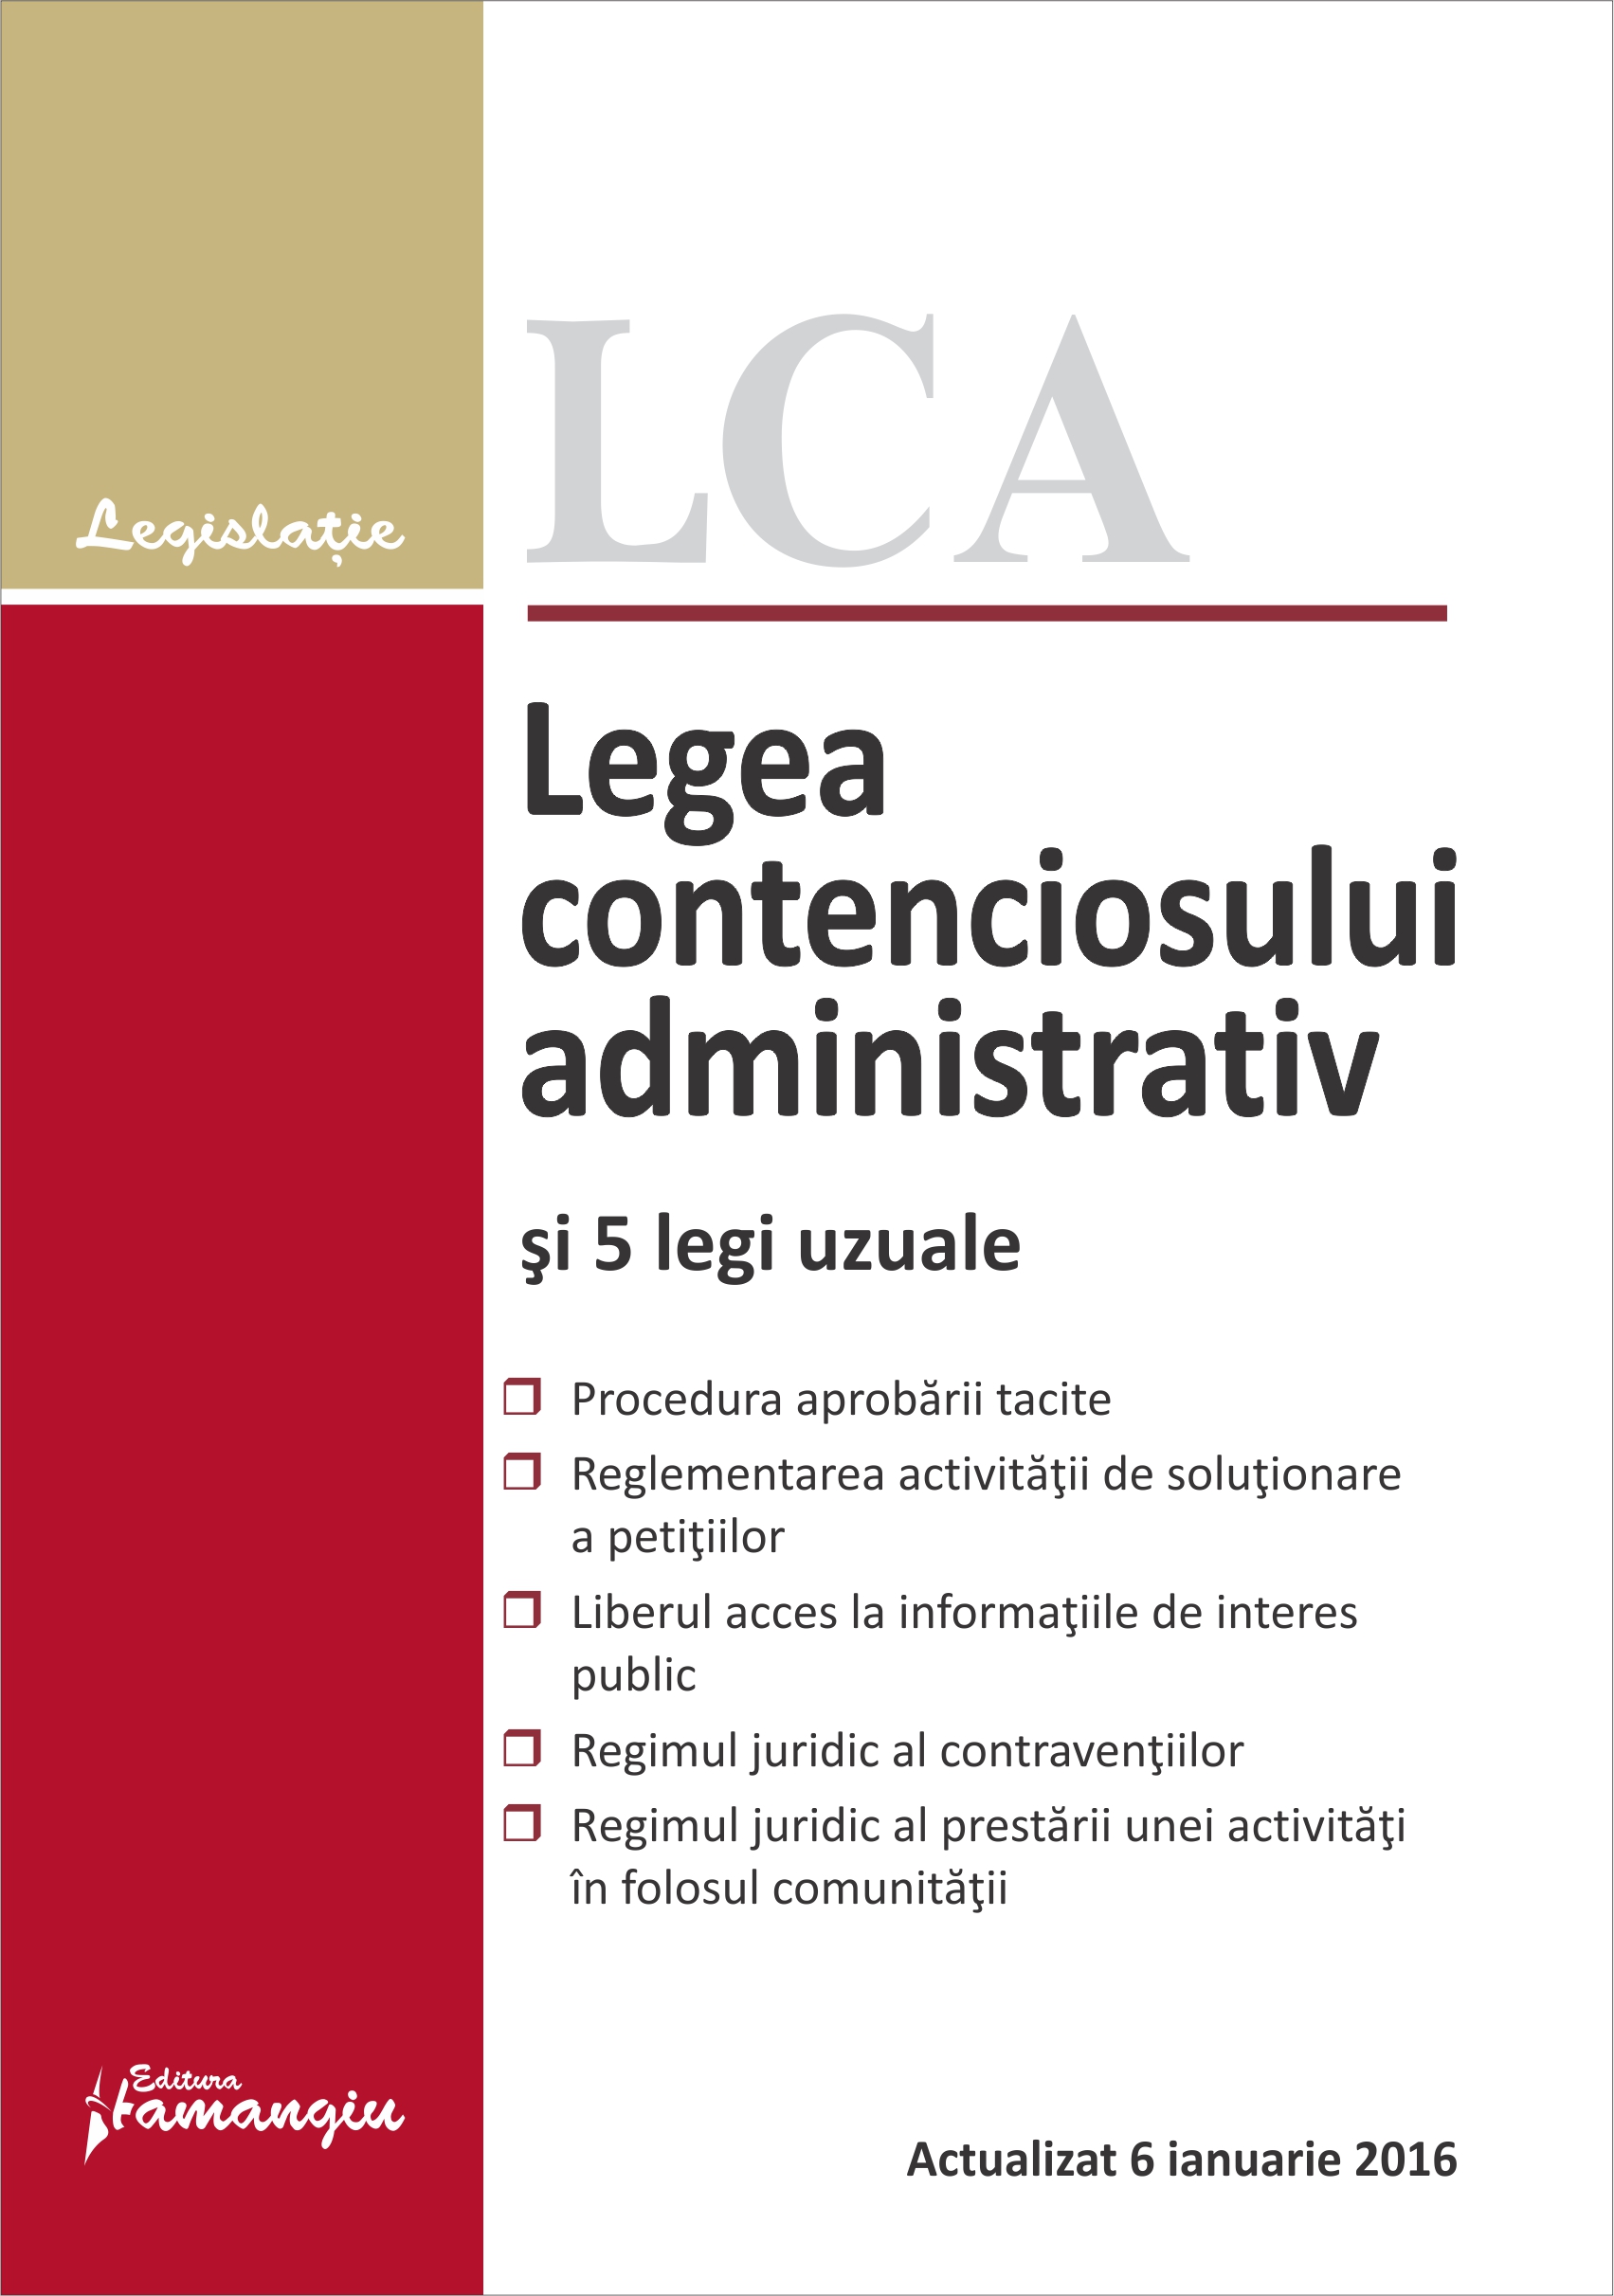 Legea contenciosului administrativ si 5 legi uzuale act. 6 ianuarie 2016